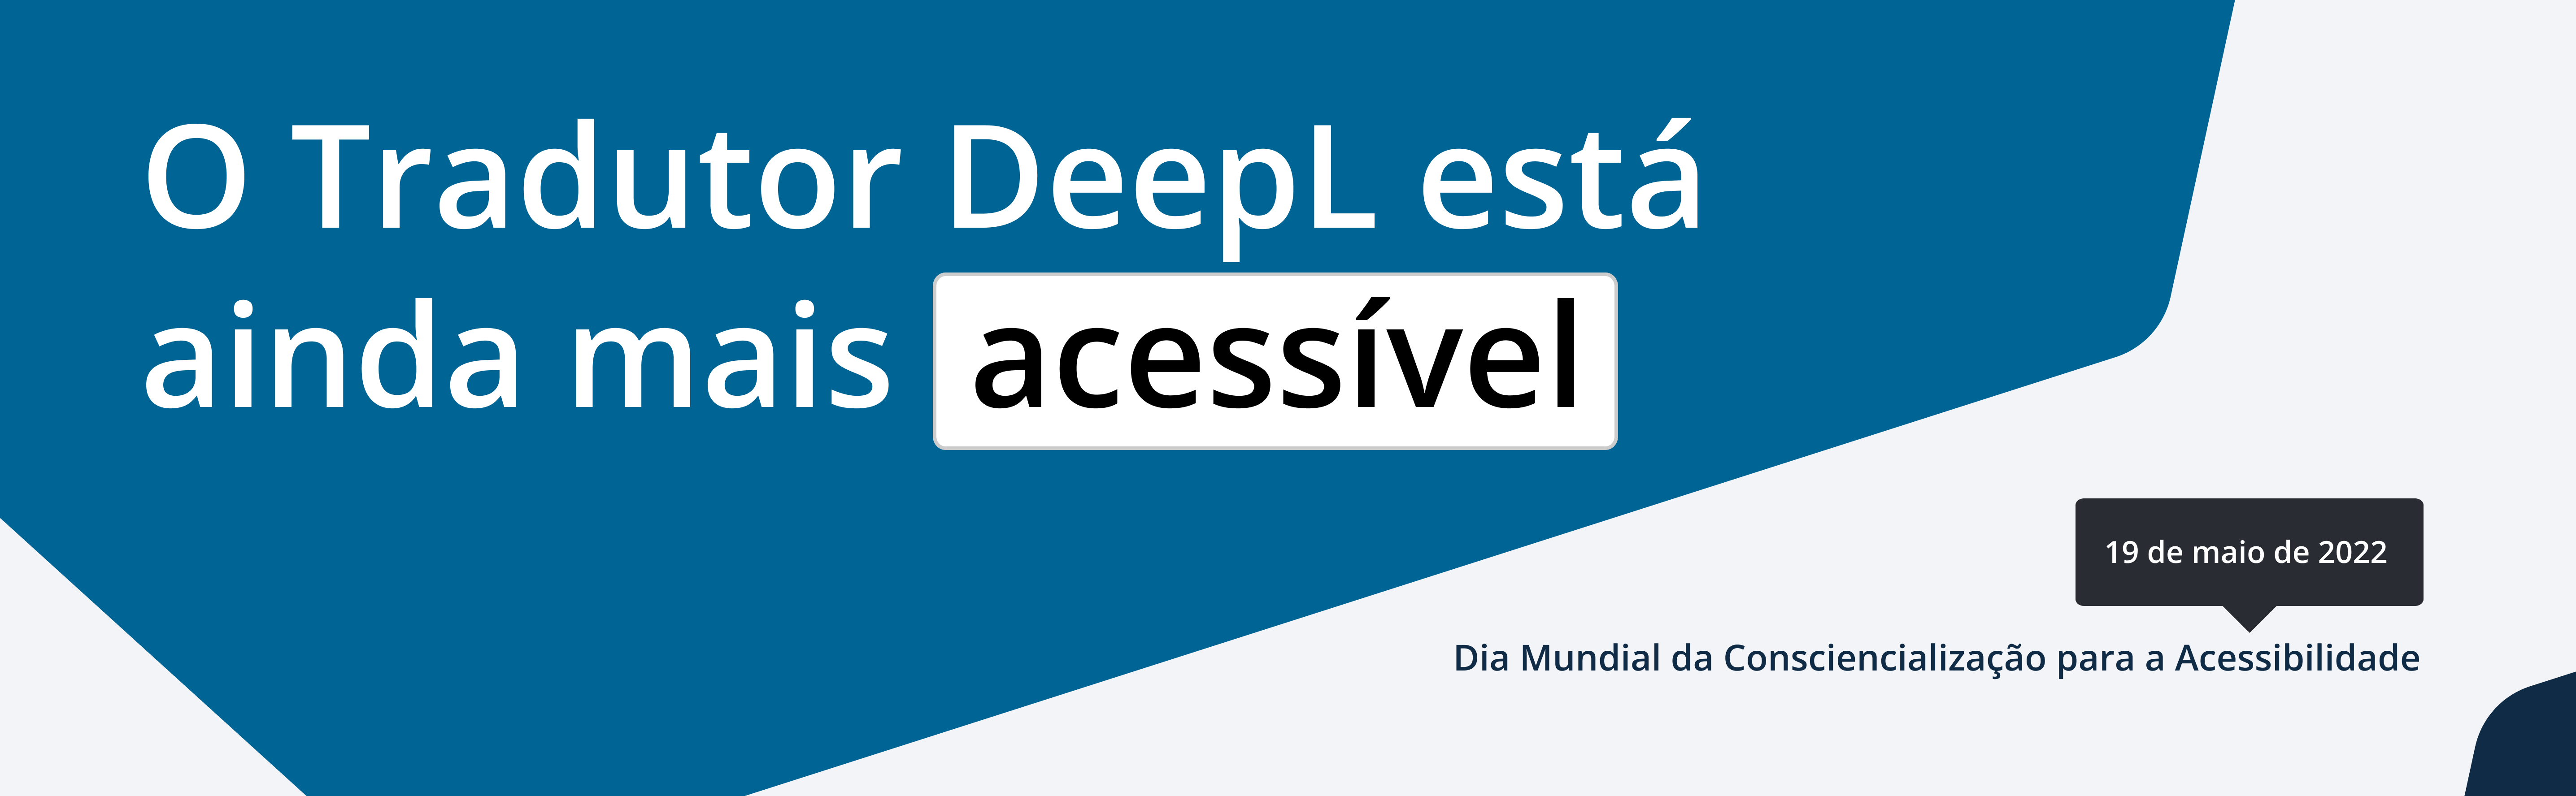 A DeepL está a melhorar a sua acessibilidade. Dia Mundial da Consciencialização para a Acessibilidade: 19 de maio de 2022